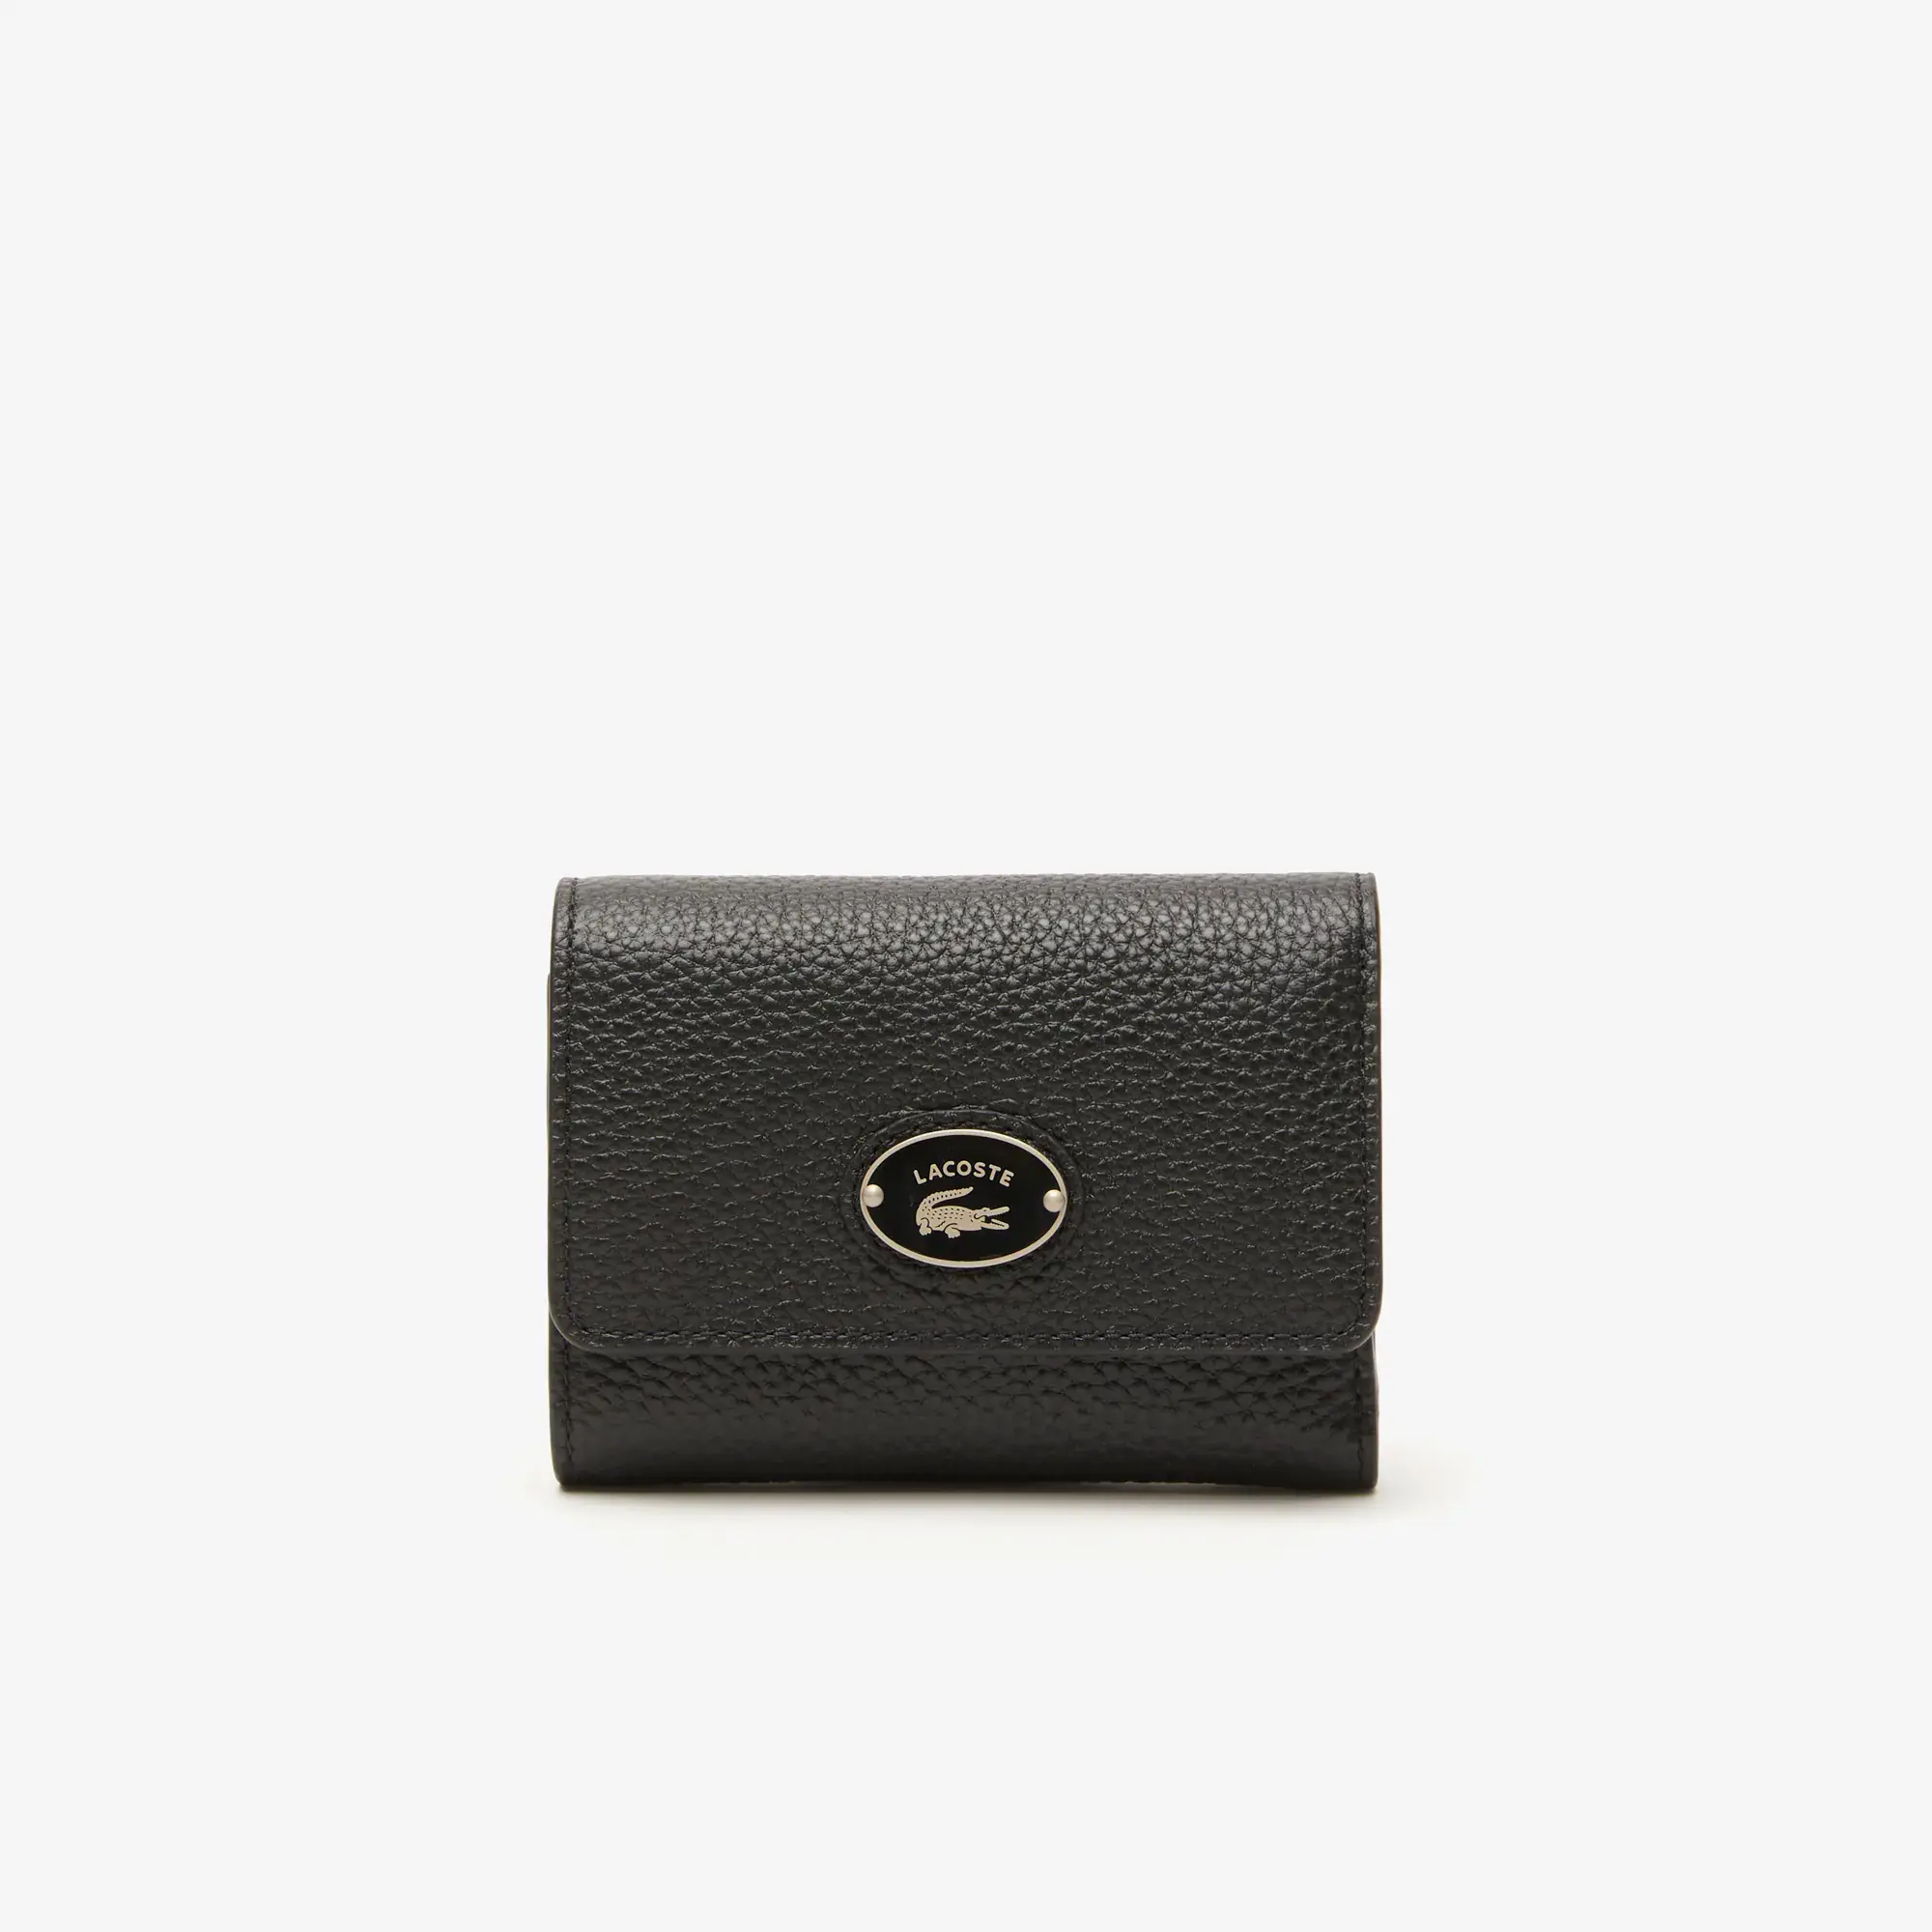 Lacoste Women’s Top Grain Leather Flap Close Wallet. 1